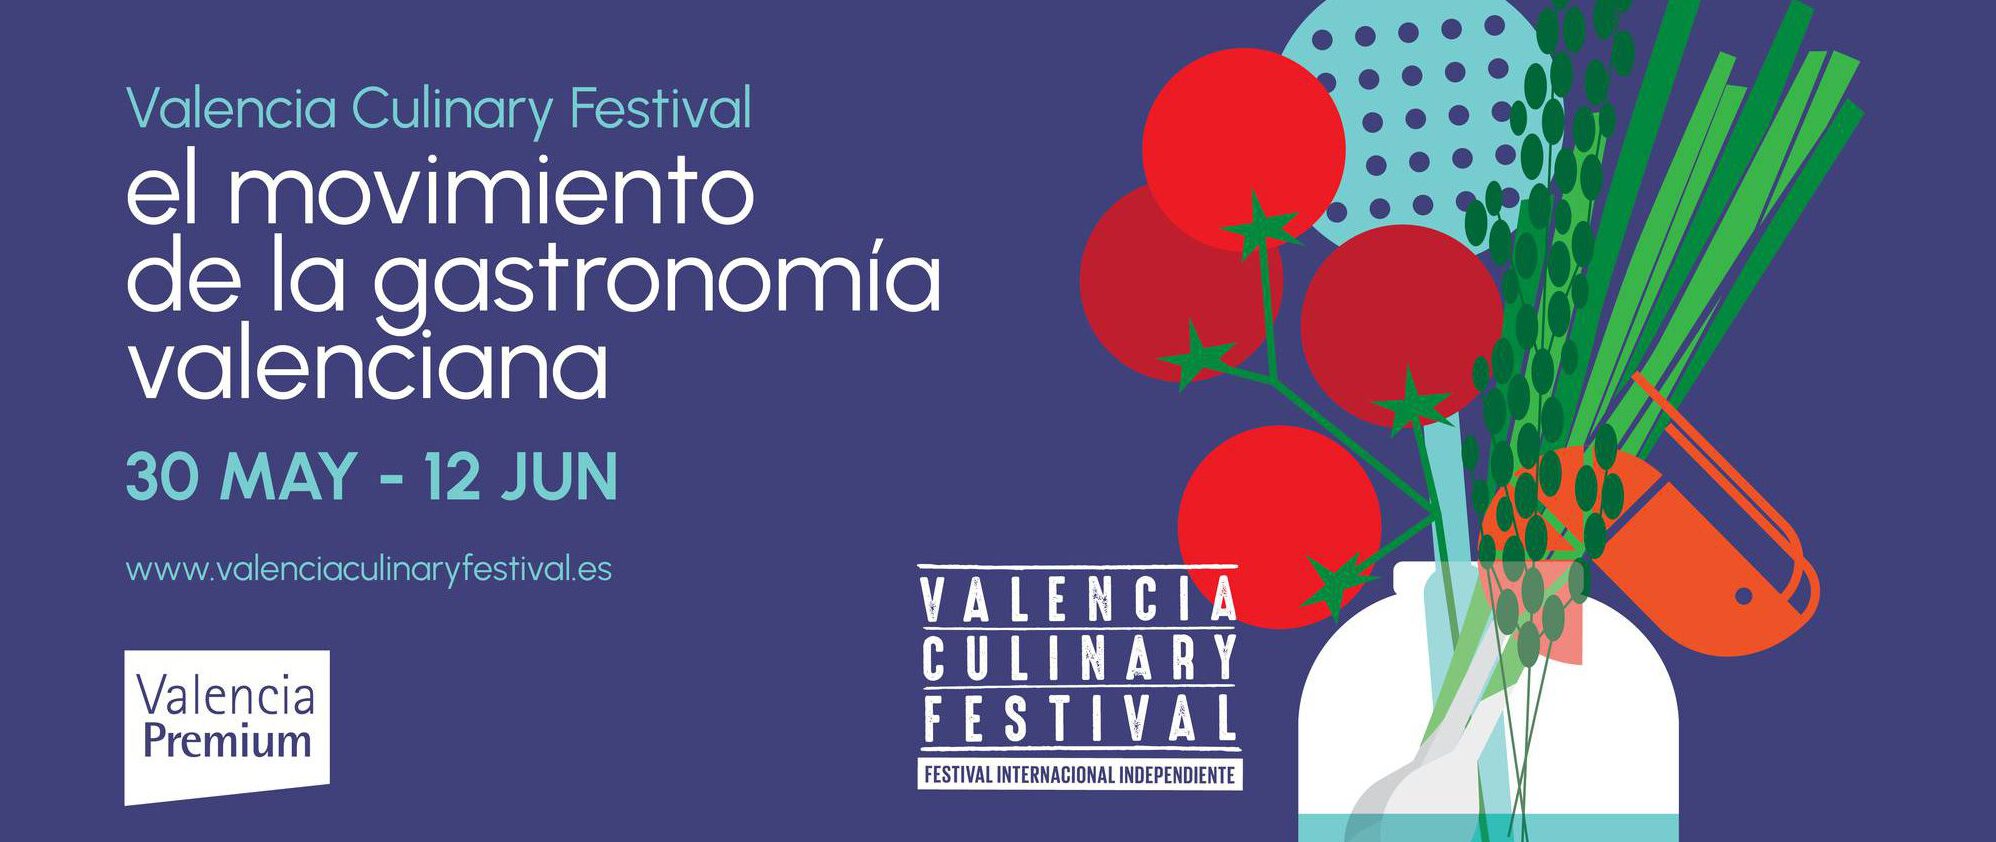 Das Valencia Culinary Festival ist mit den besten gastronomischen Angeboten zurück